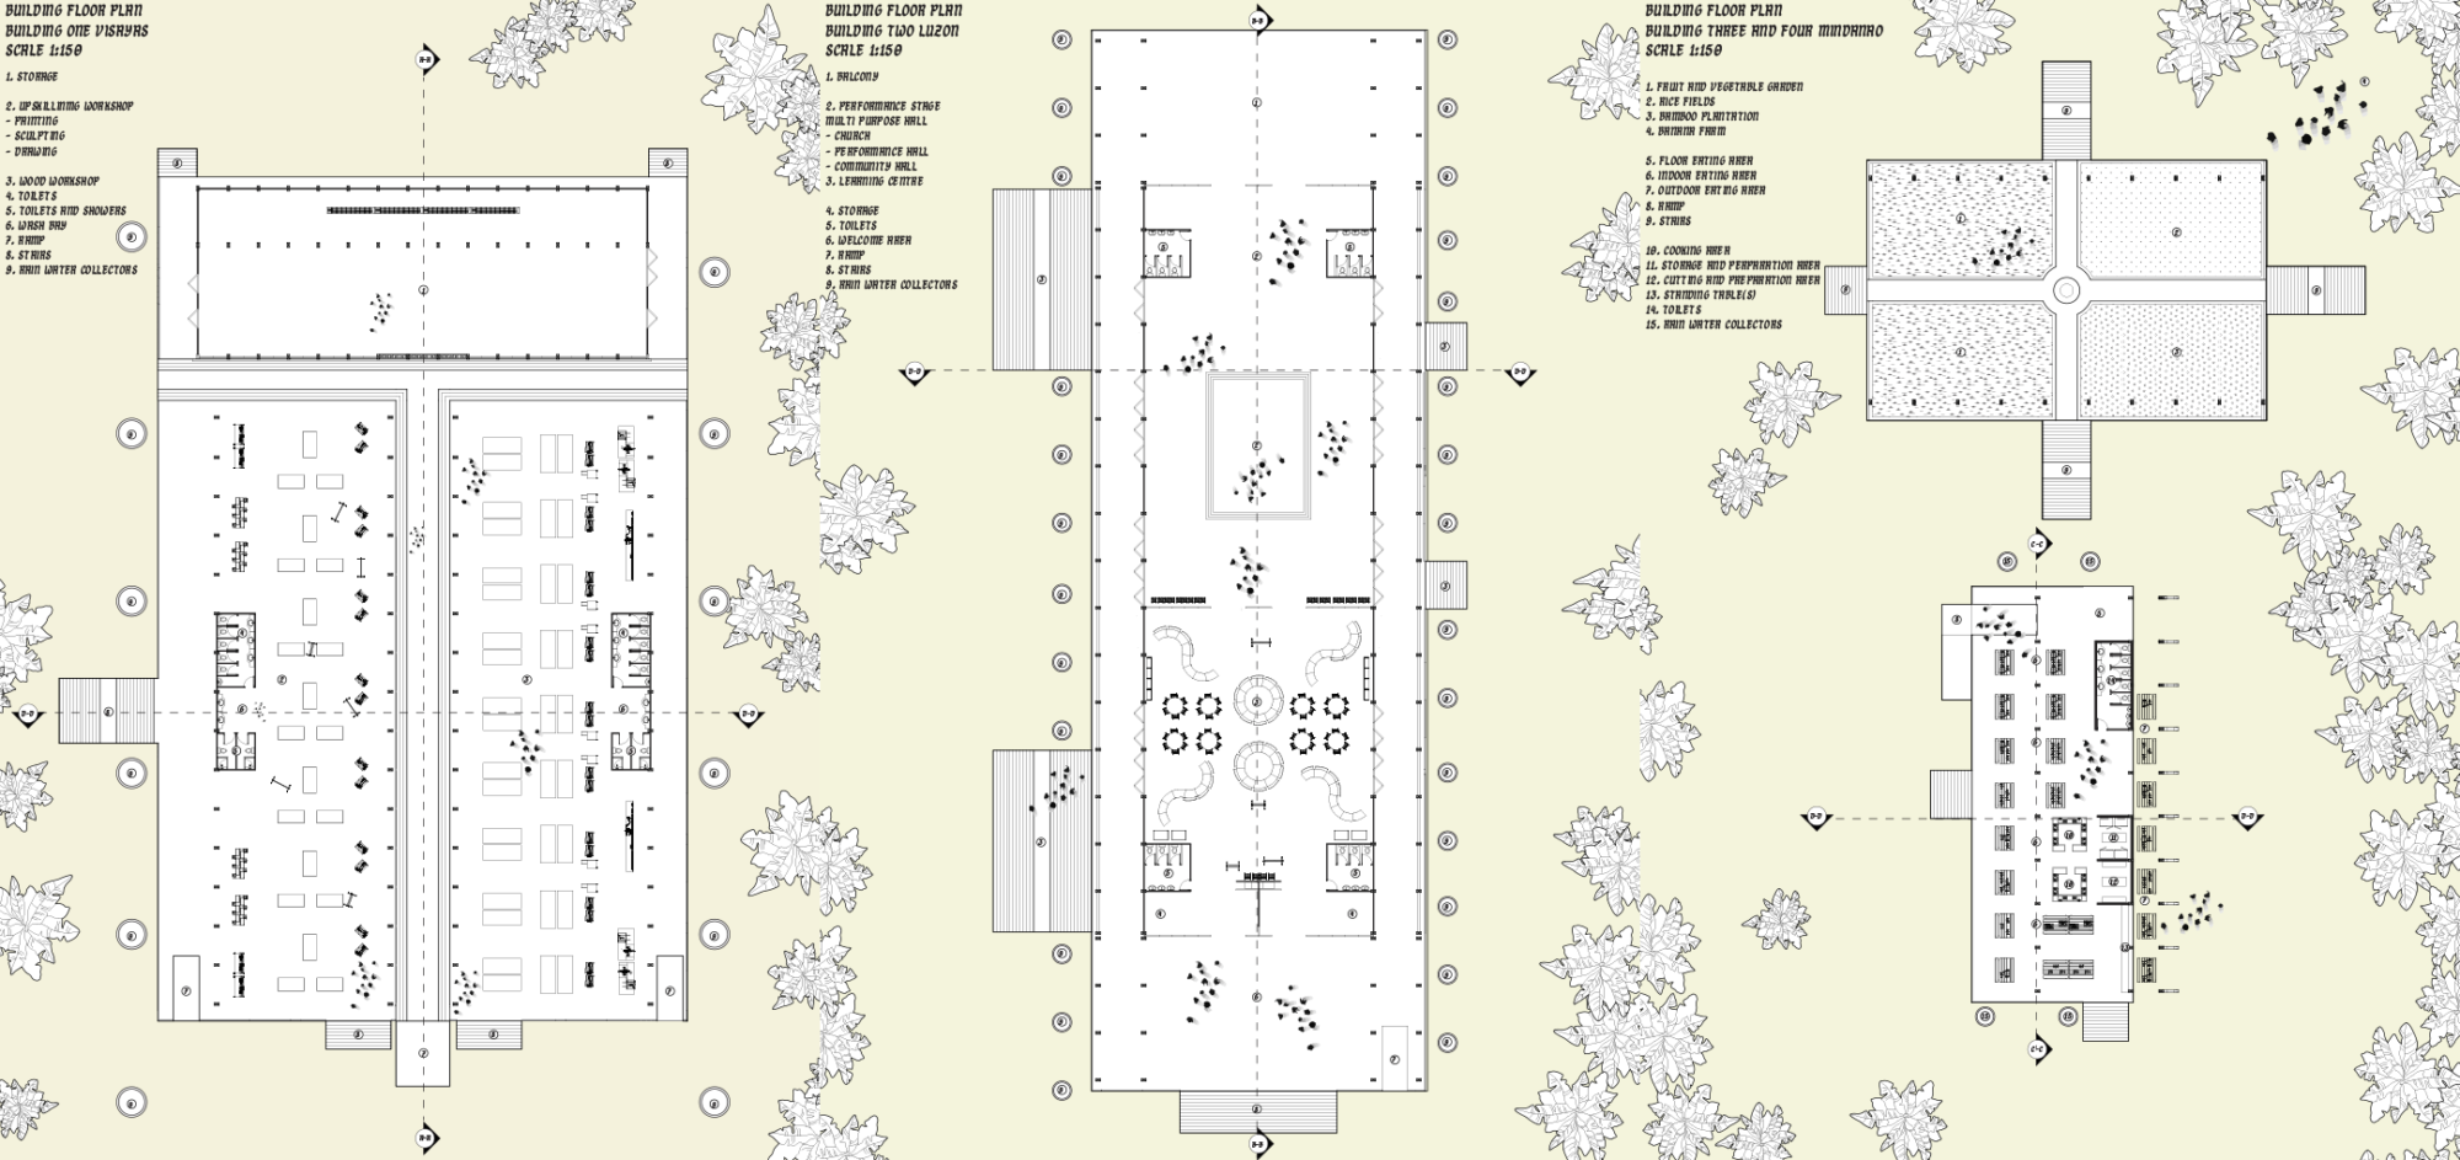 8 Floor Plan Combined